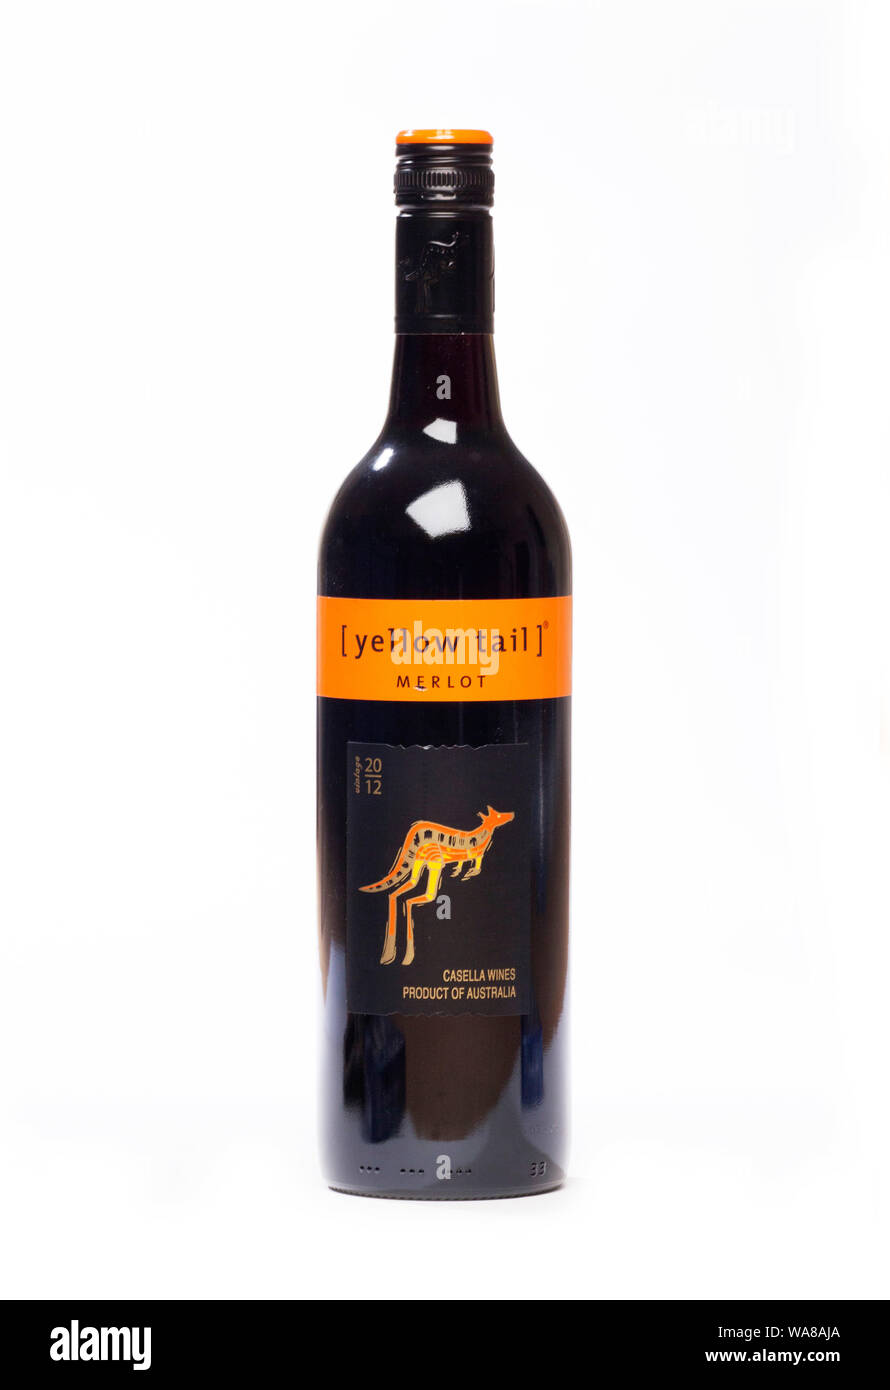 Bouteille de Yellow Tail Merlot vin rouge australien Banque D'Images